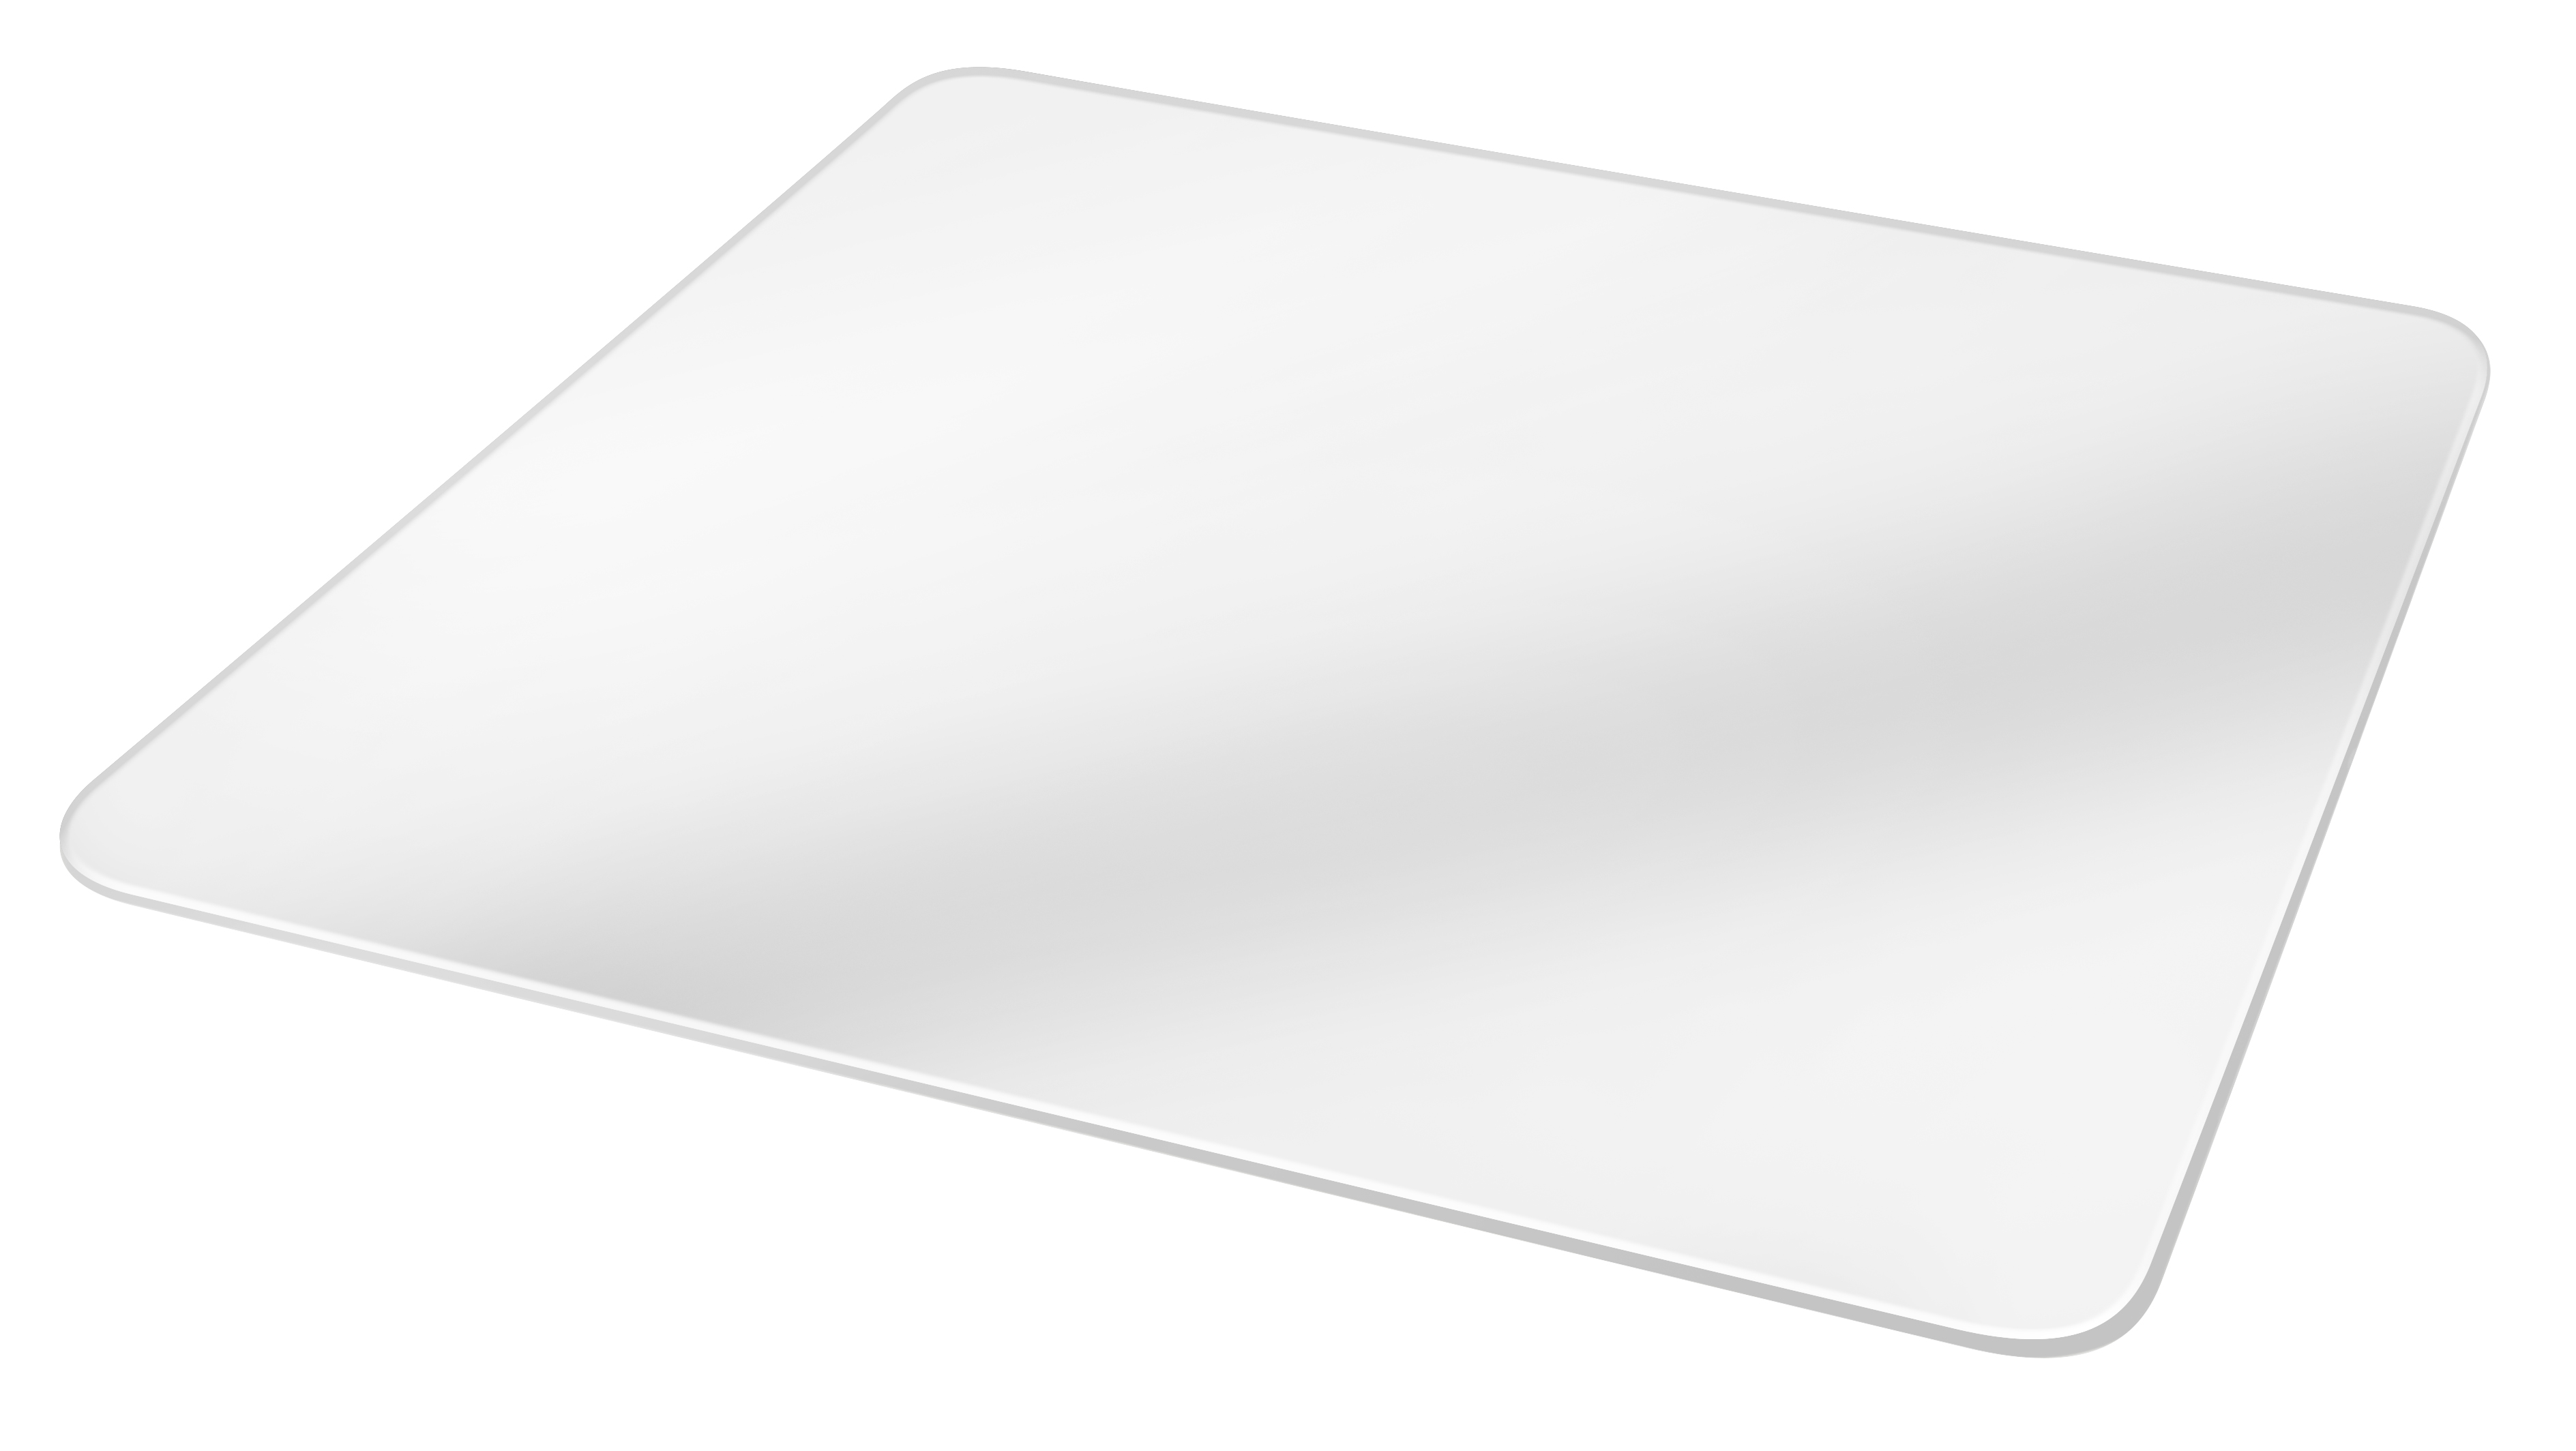 Plancha de Acrílico BRESSER BR-AP1 50x50cm blanca